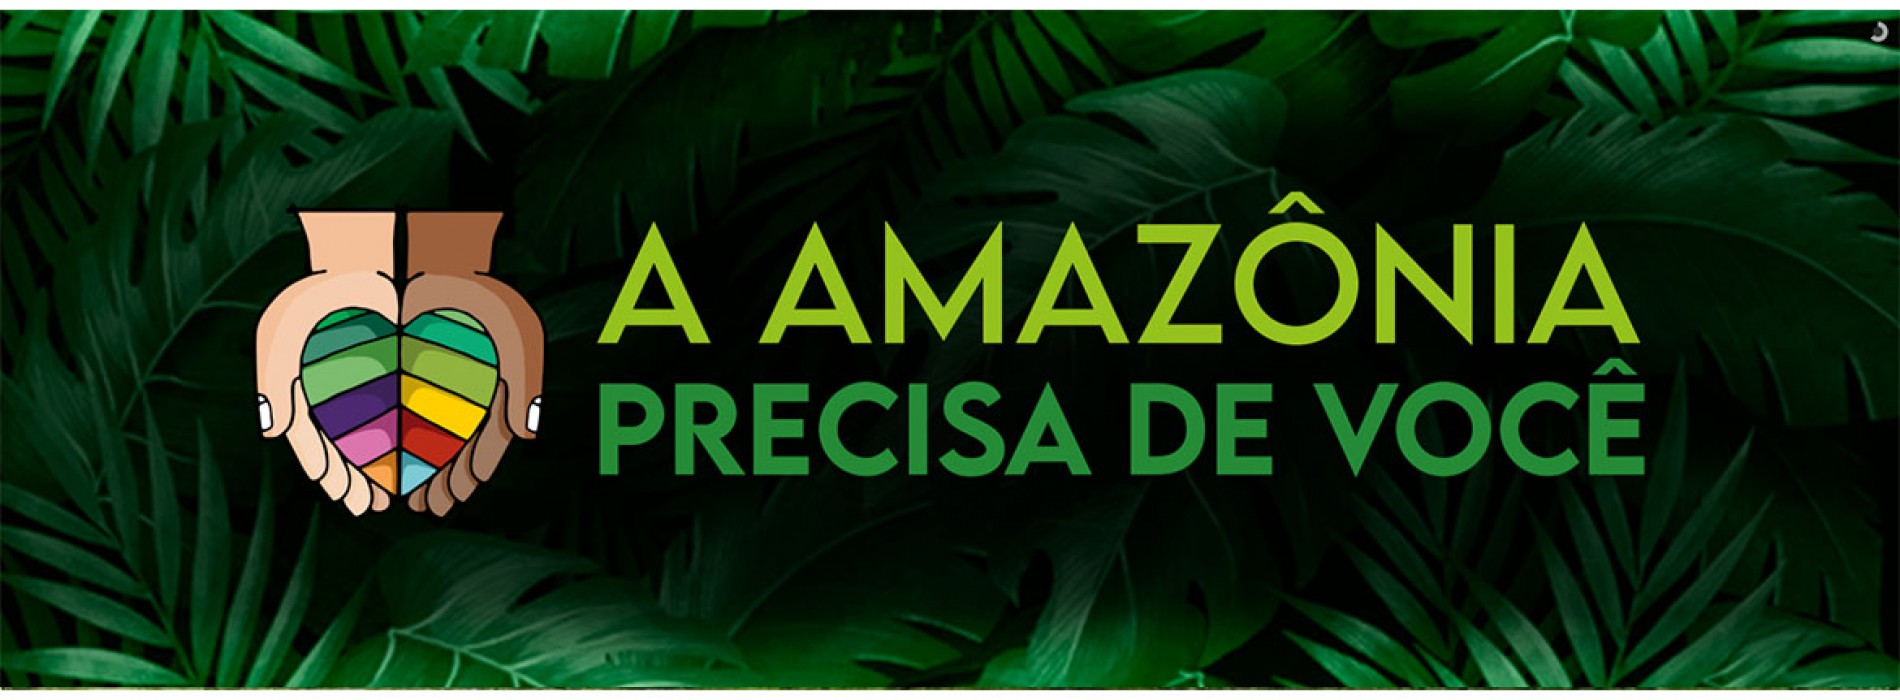 Campanha Solidária: “A Amazônia precisa de você”